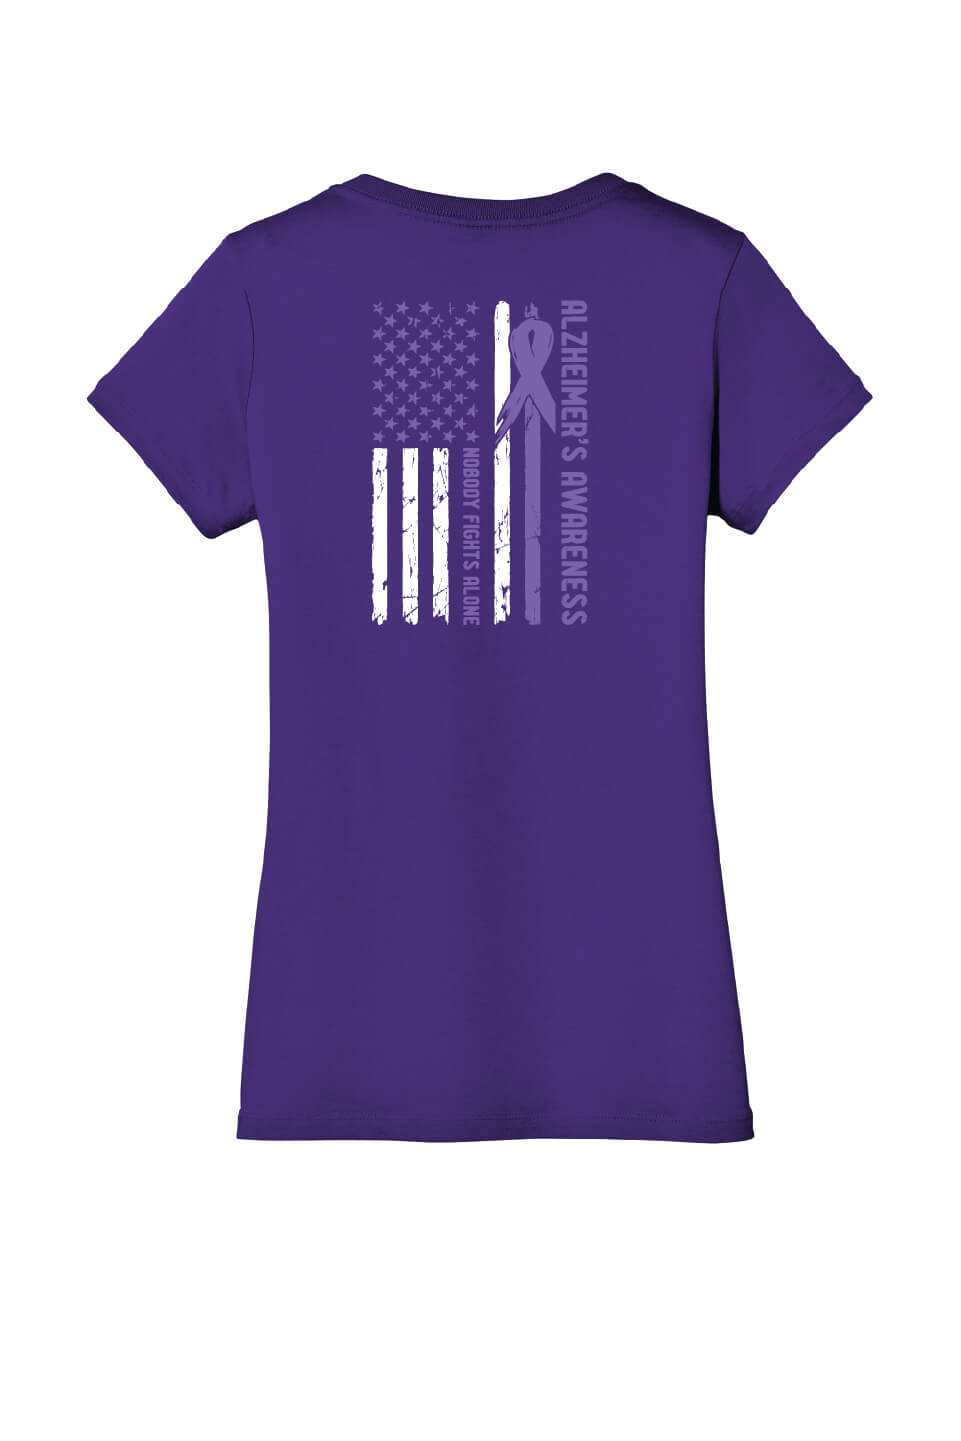 Memories Matter Flag Back Ladies V-Neck Short Sleeve T-Shirt purple flag back